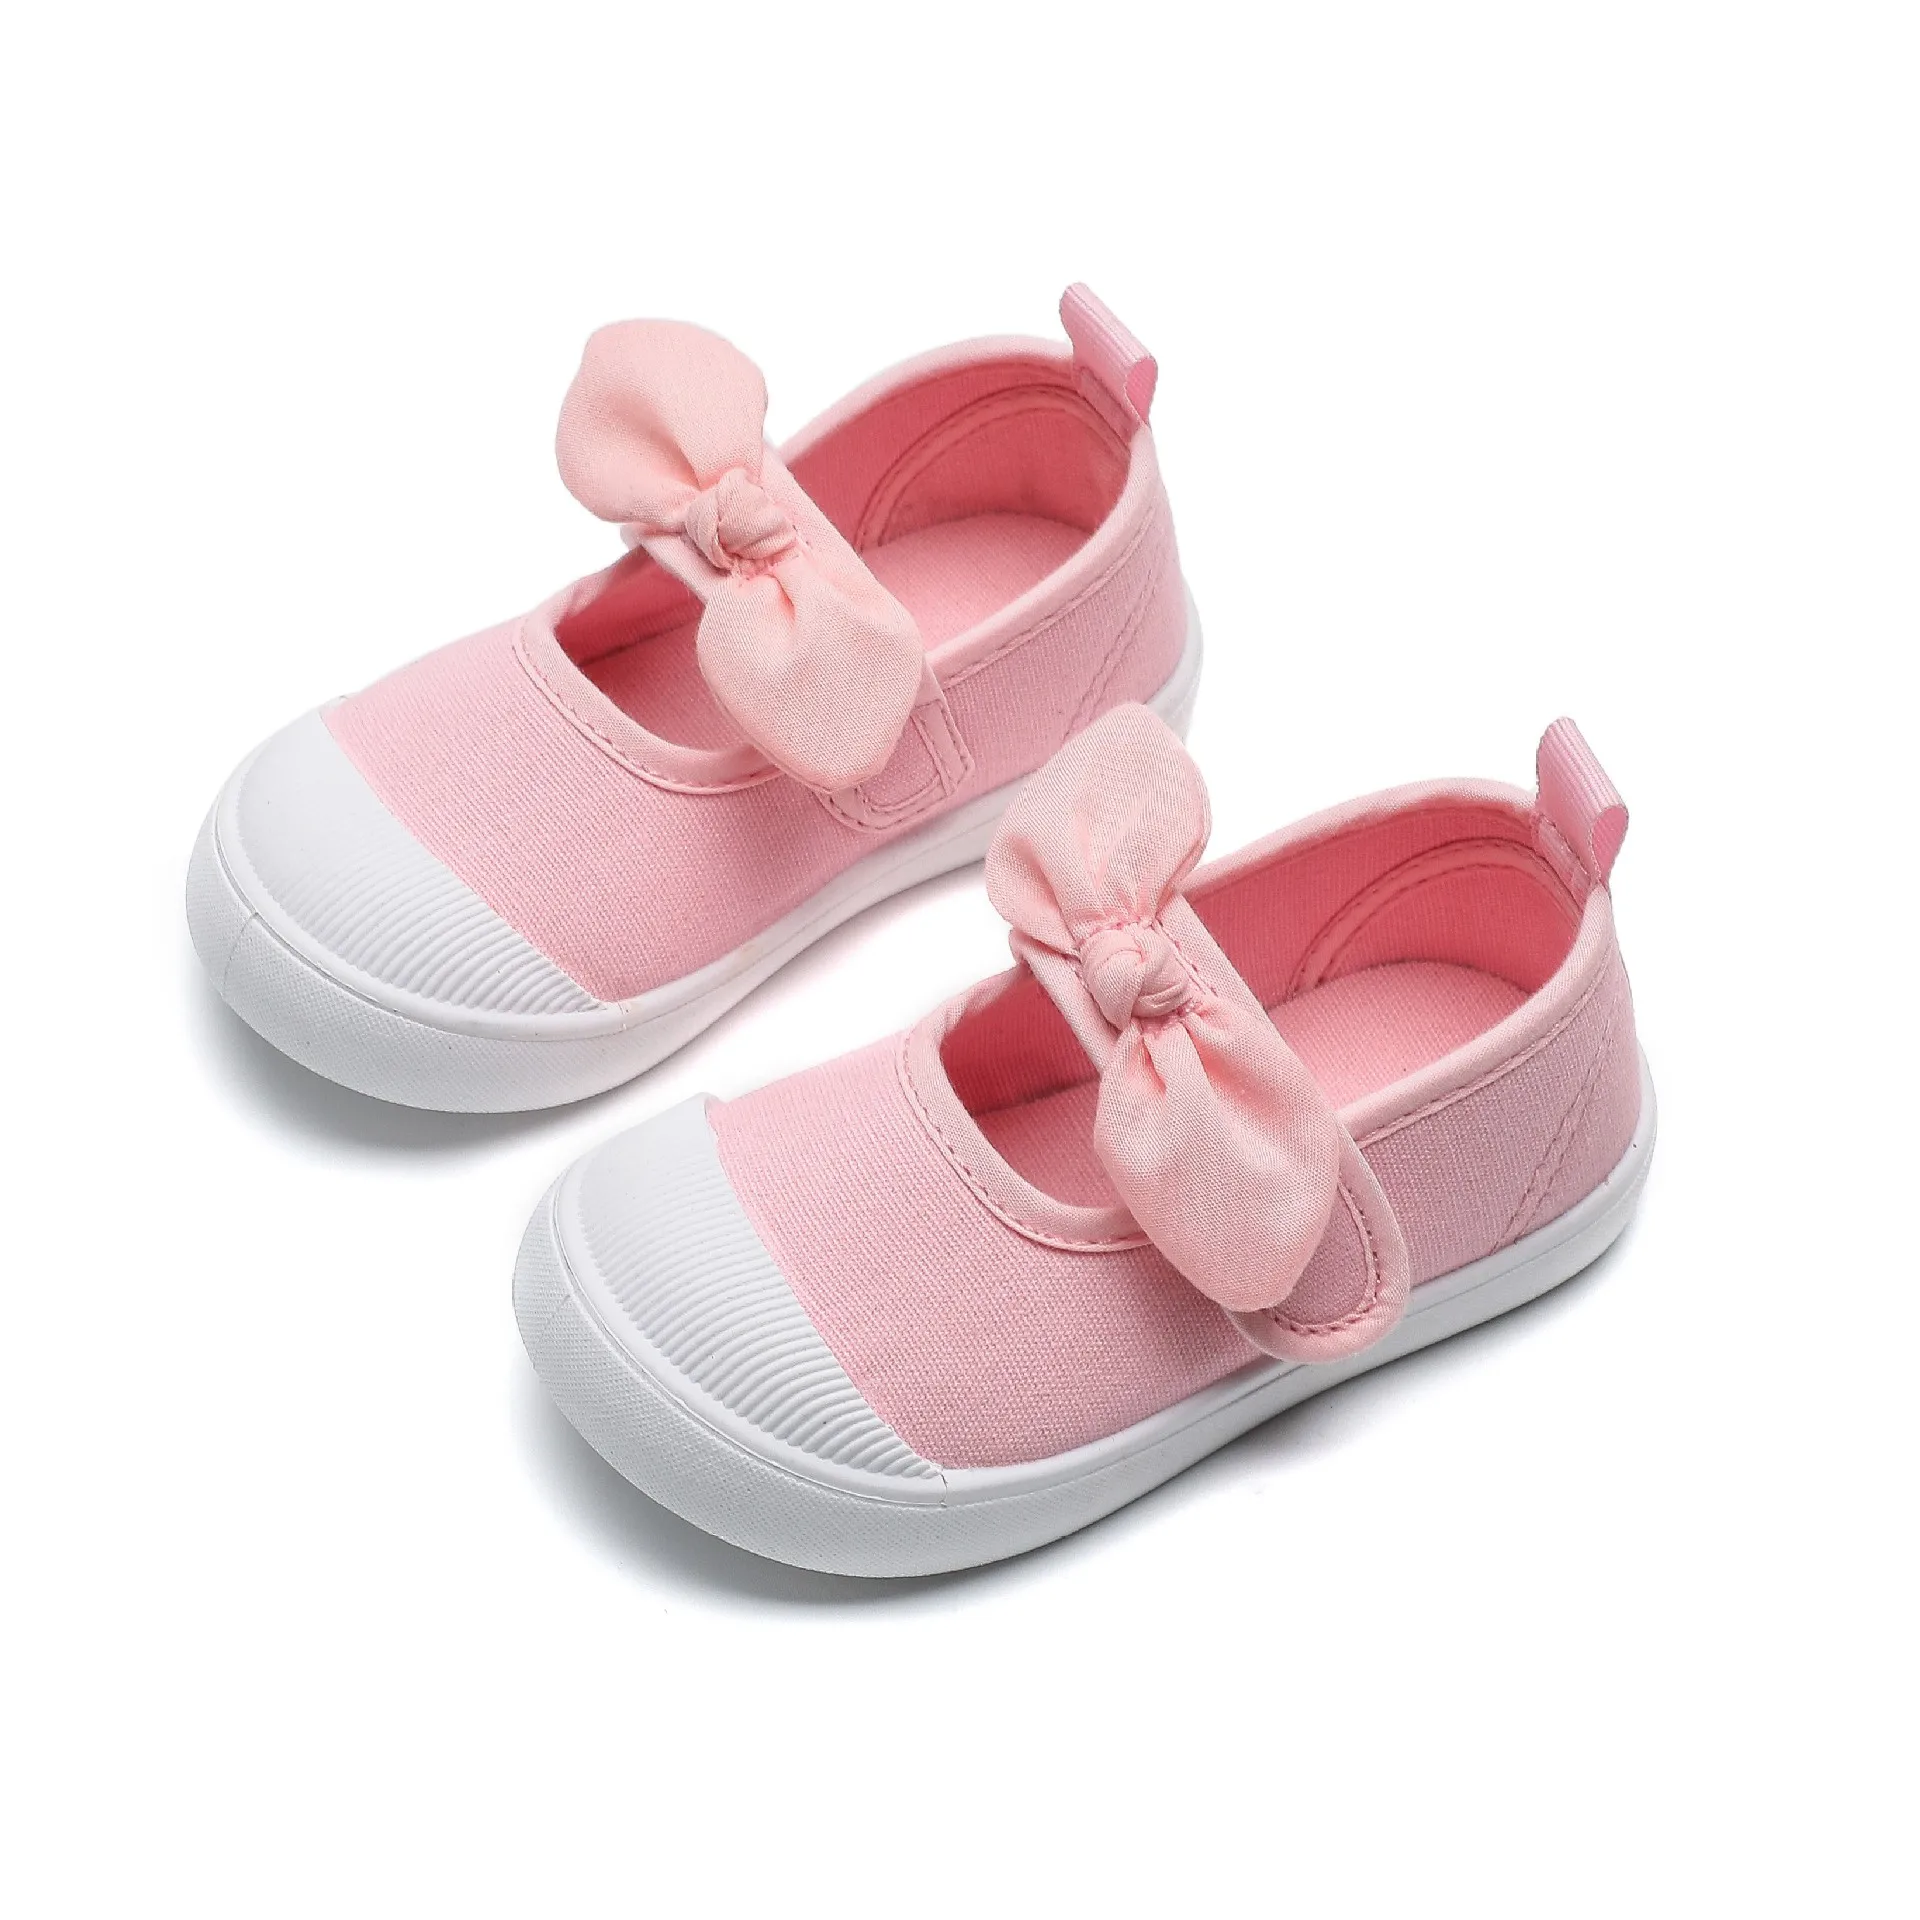 Детская парусиновая обувь для весенних девочек, Детская тканевая обувь с цветочным рисунком, Обувь принцессы, Повседневная детская домашняя обувь на мягкой подошве